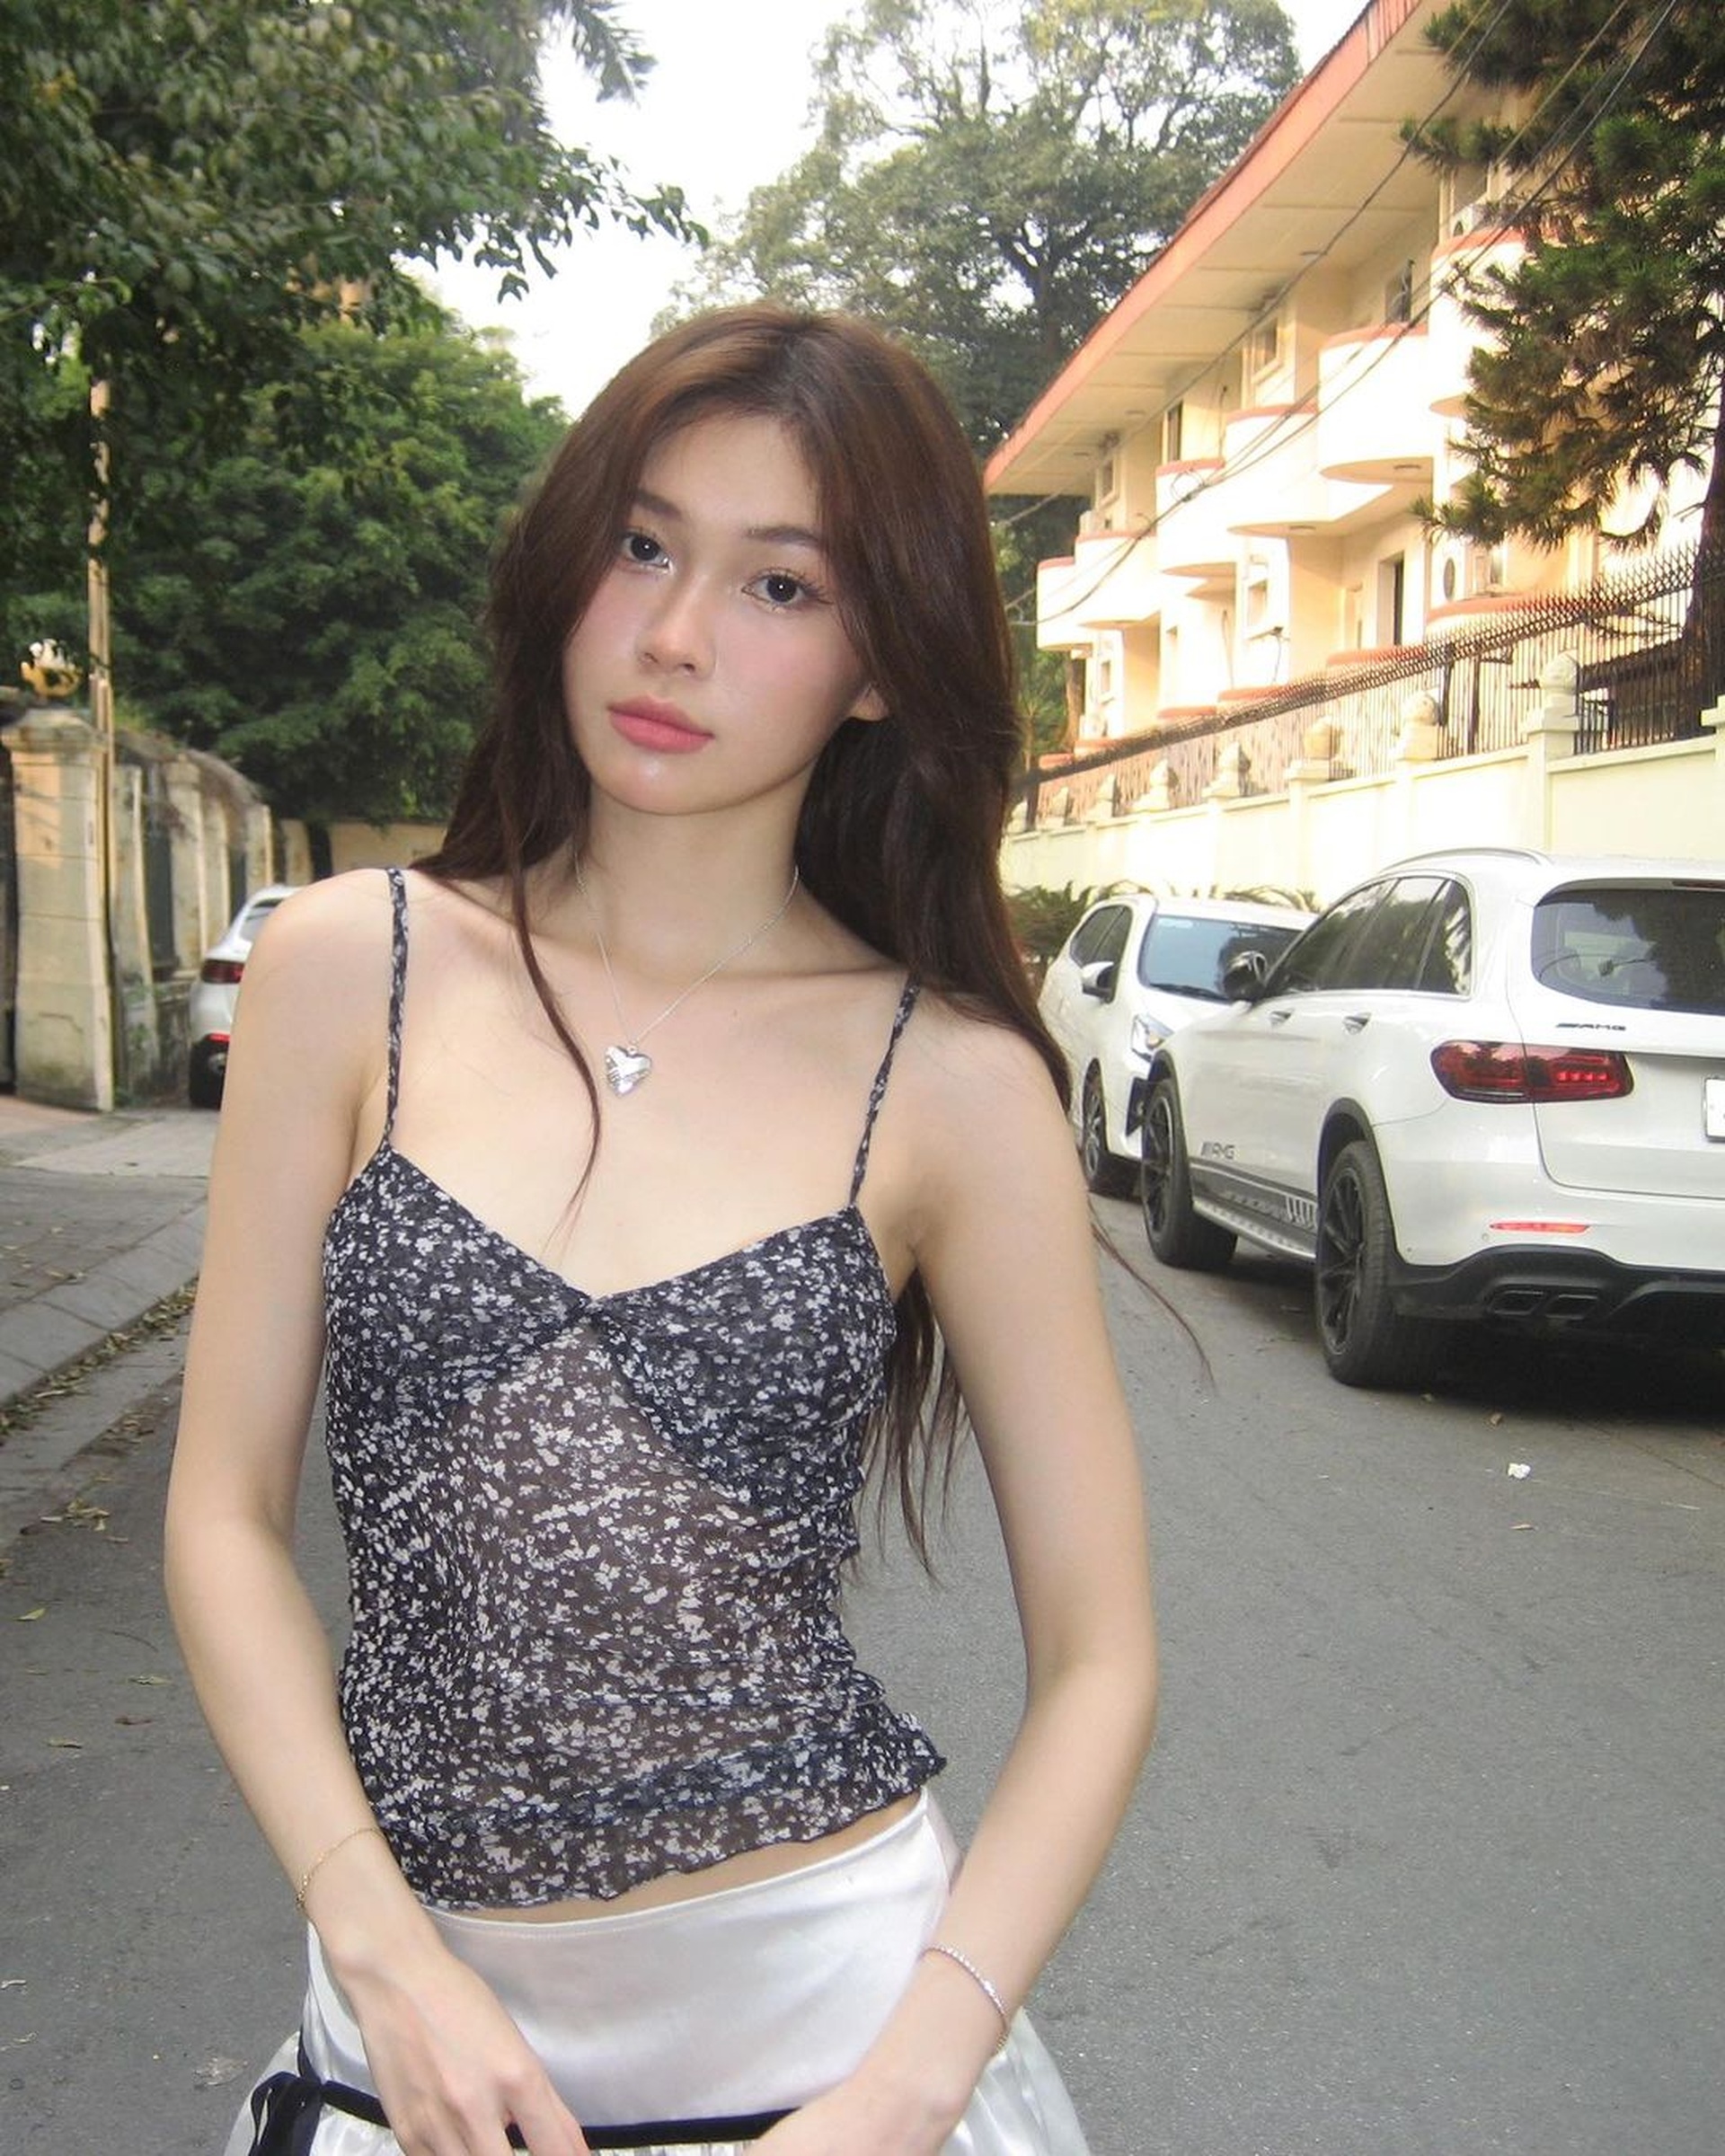 3 hot girl Việt nổi tiếng ăn mặc đẹp trong giới trẻ hiện nay - Ảnh 5.